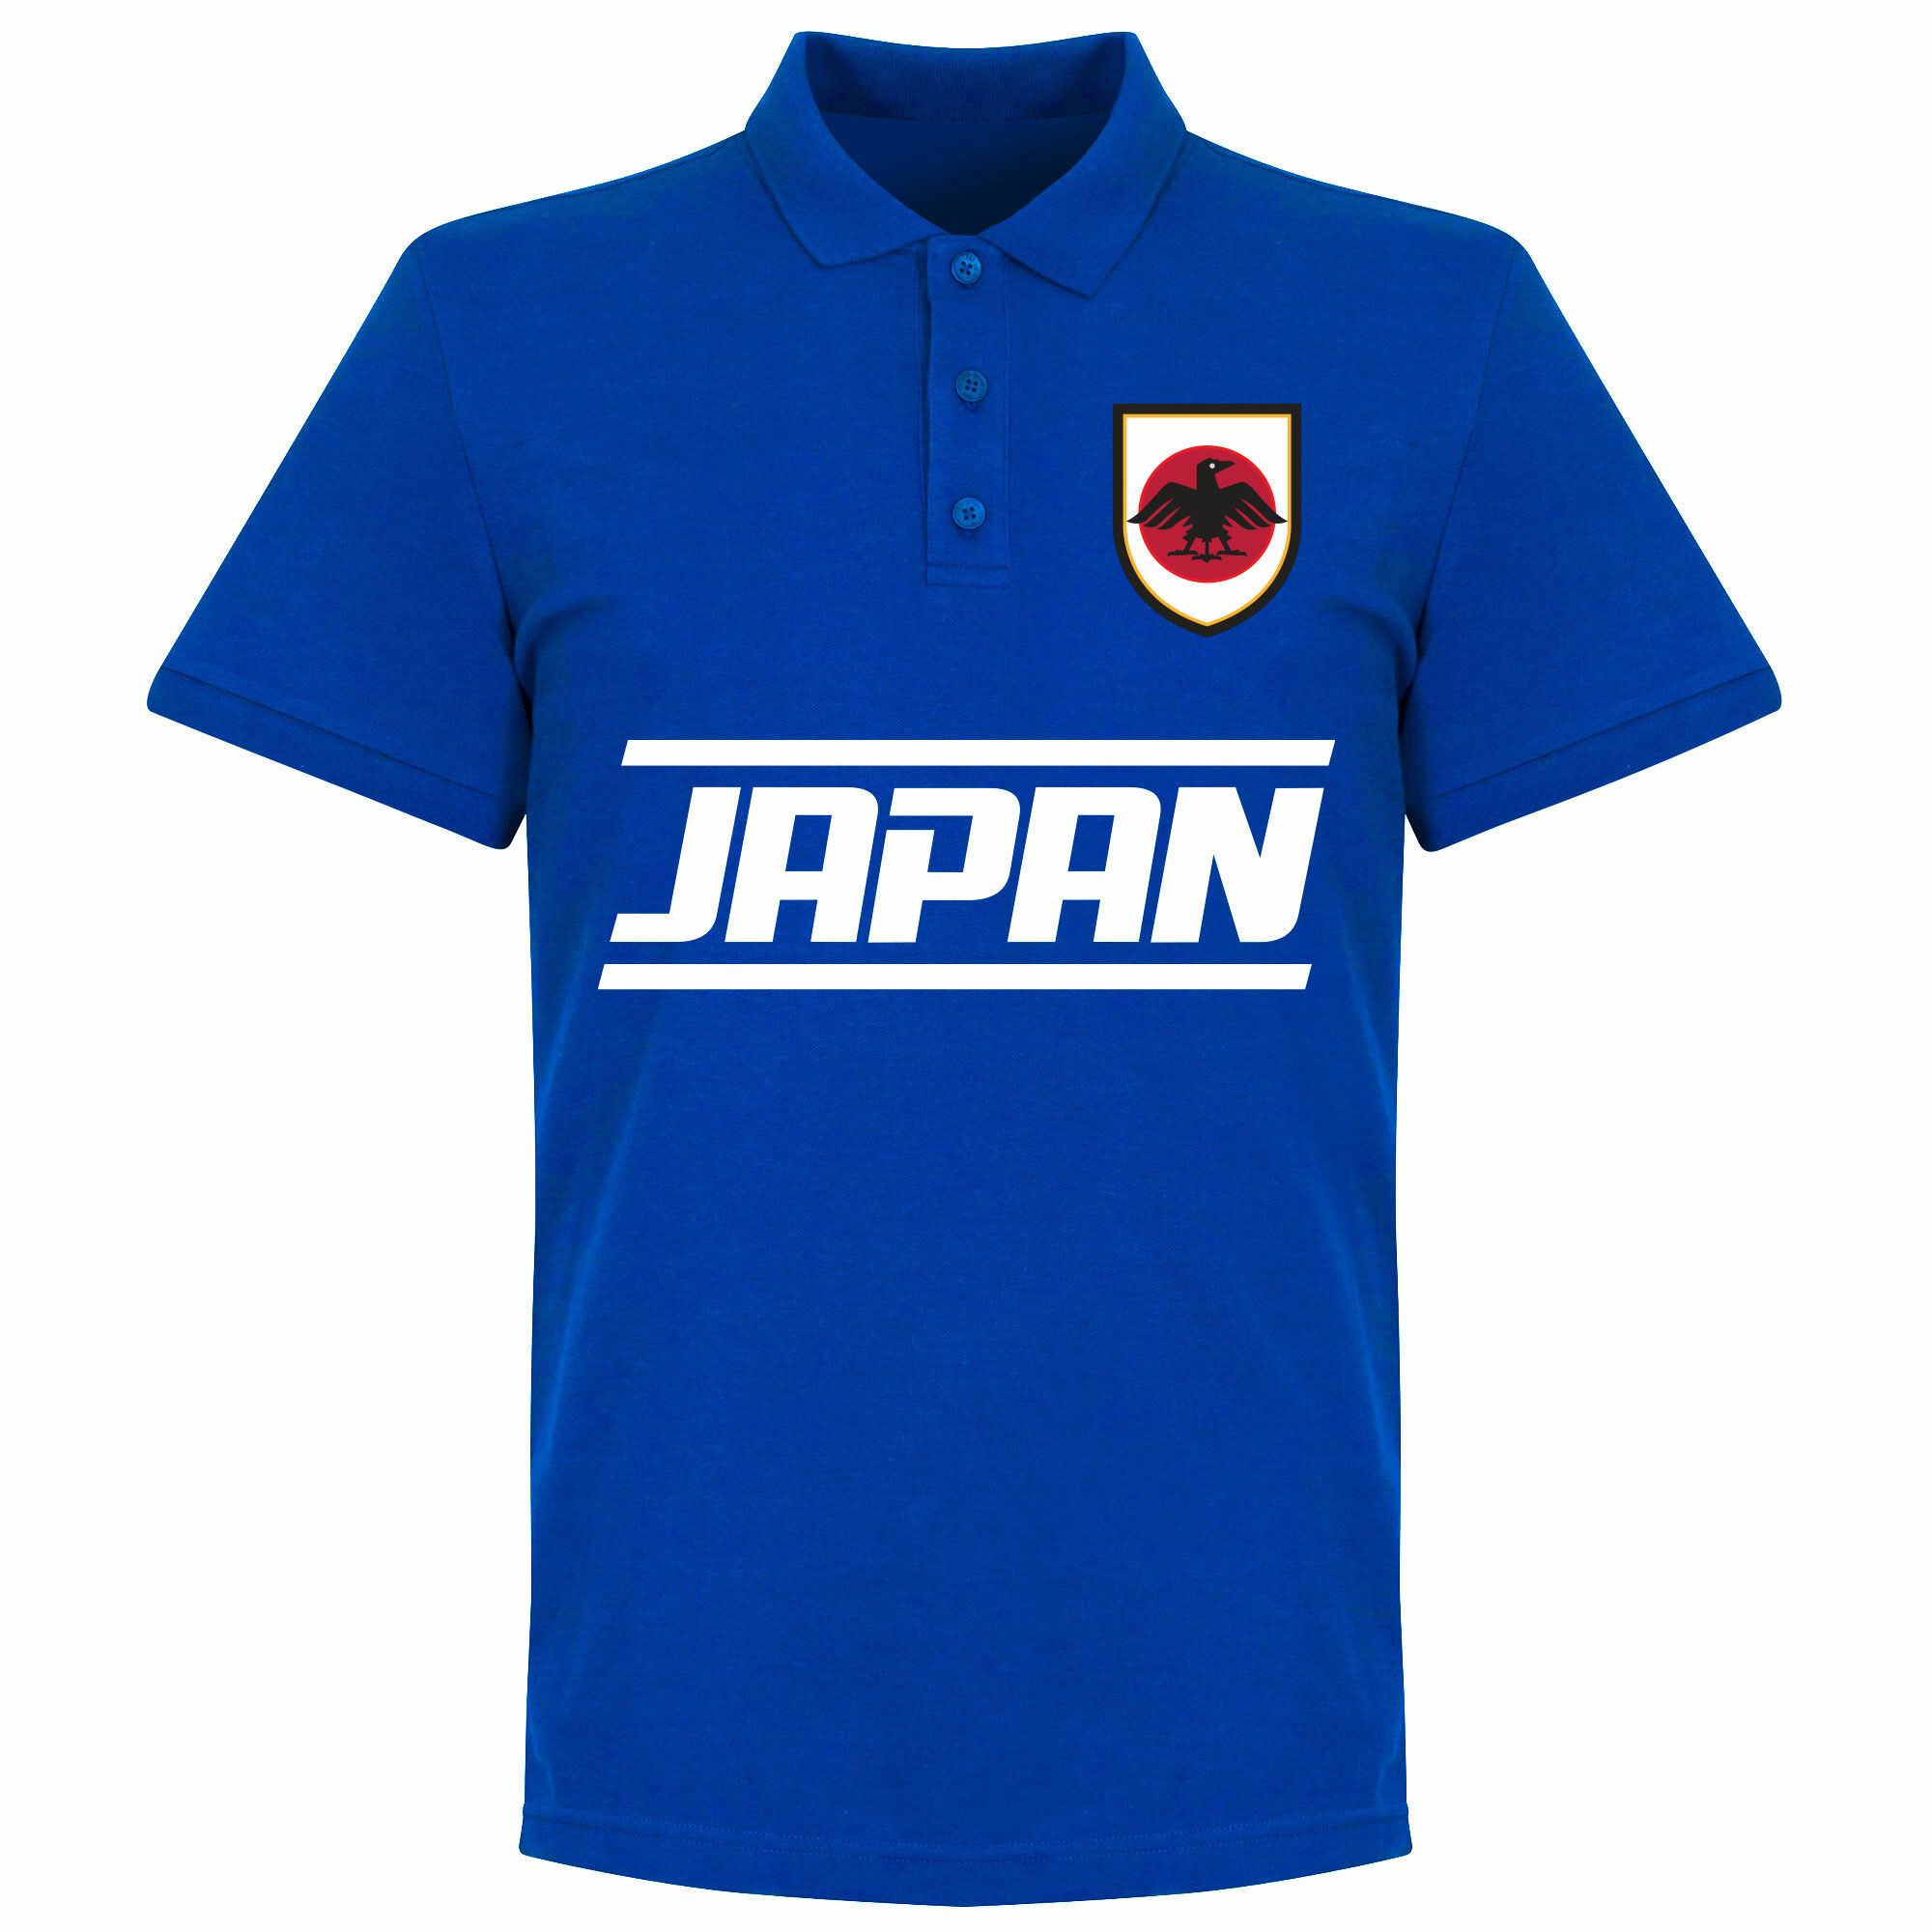 Japonsko - Tričko s límečkem - modré